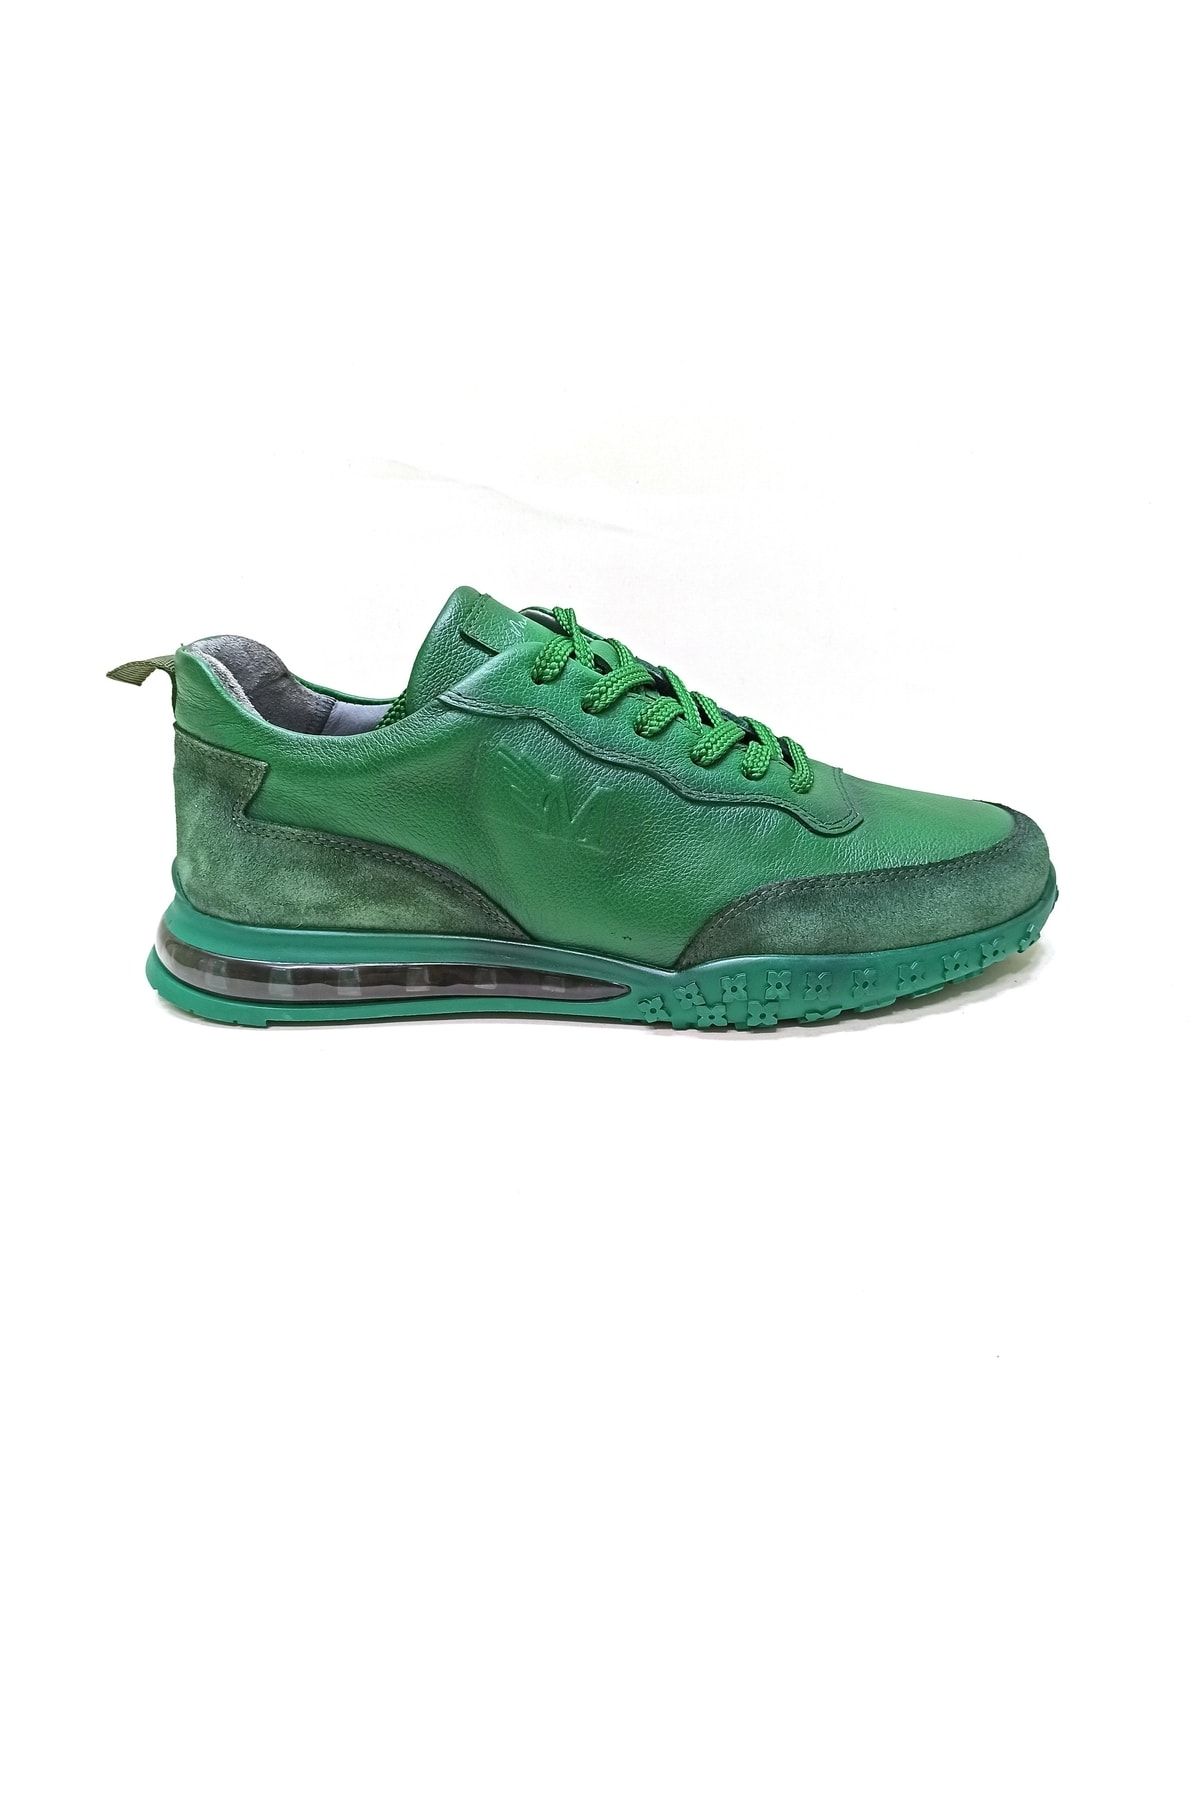 MARCOMEN Haki Yeşil Deri Erkek Sneaker Ayakkabı